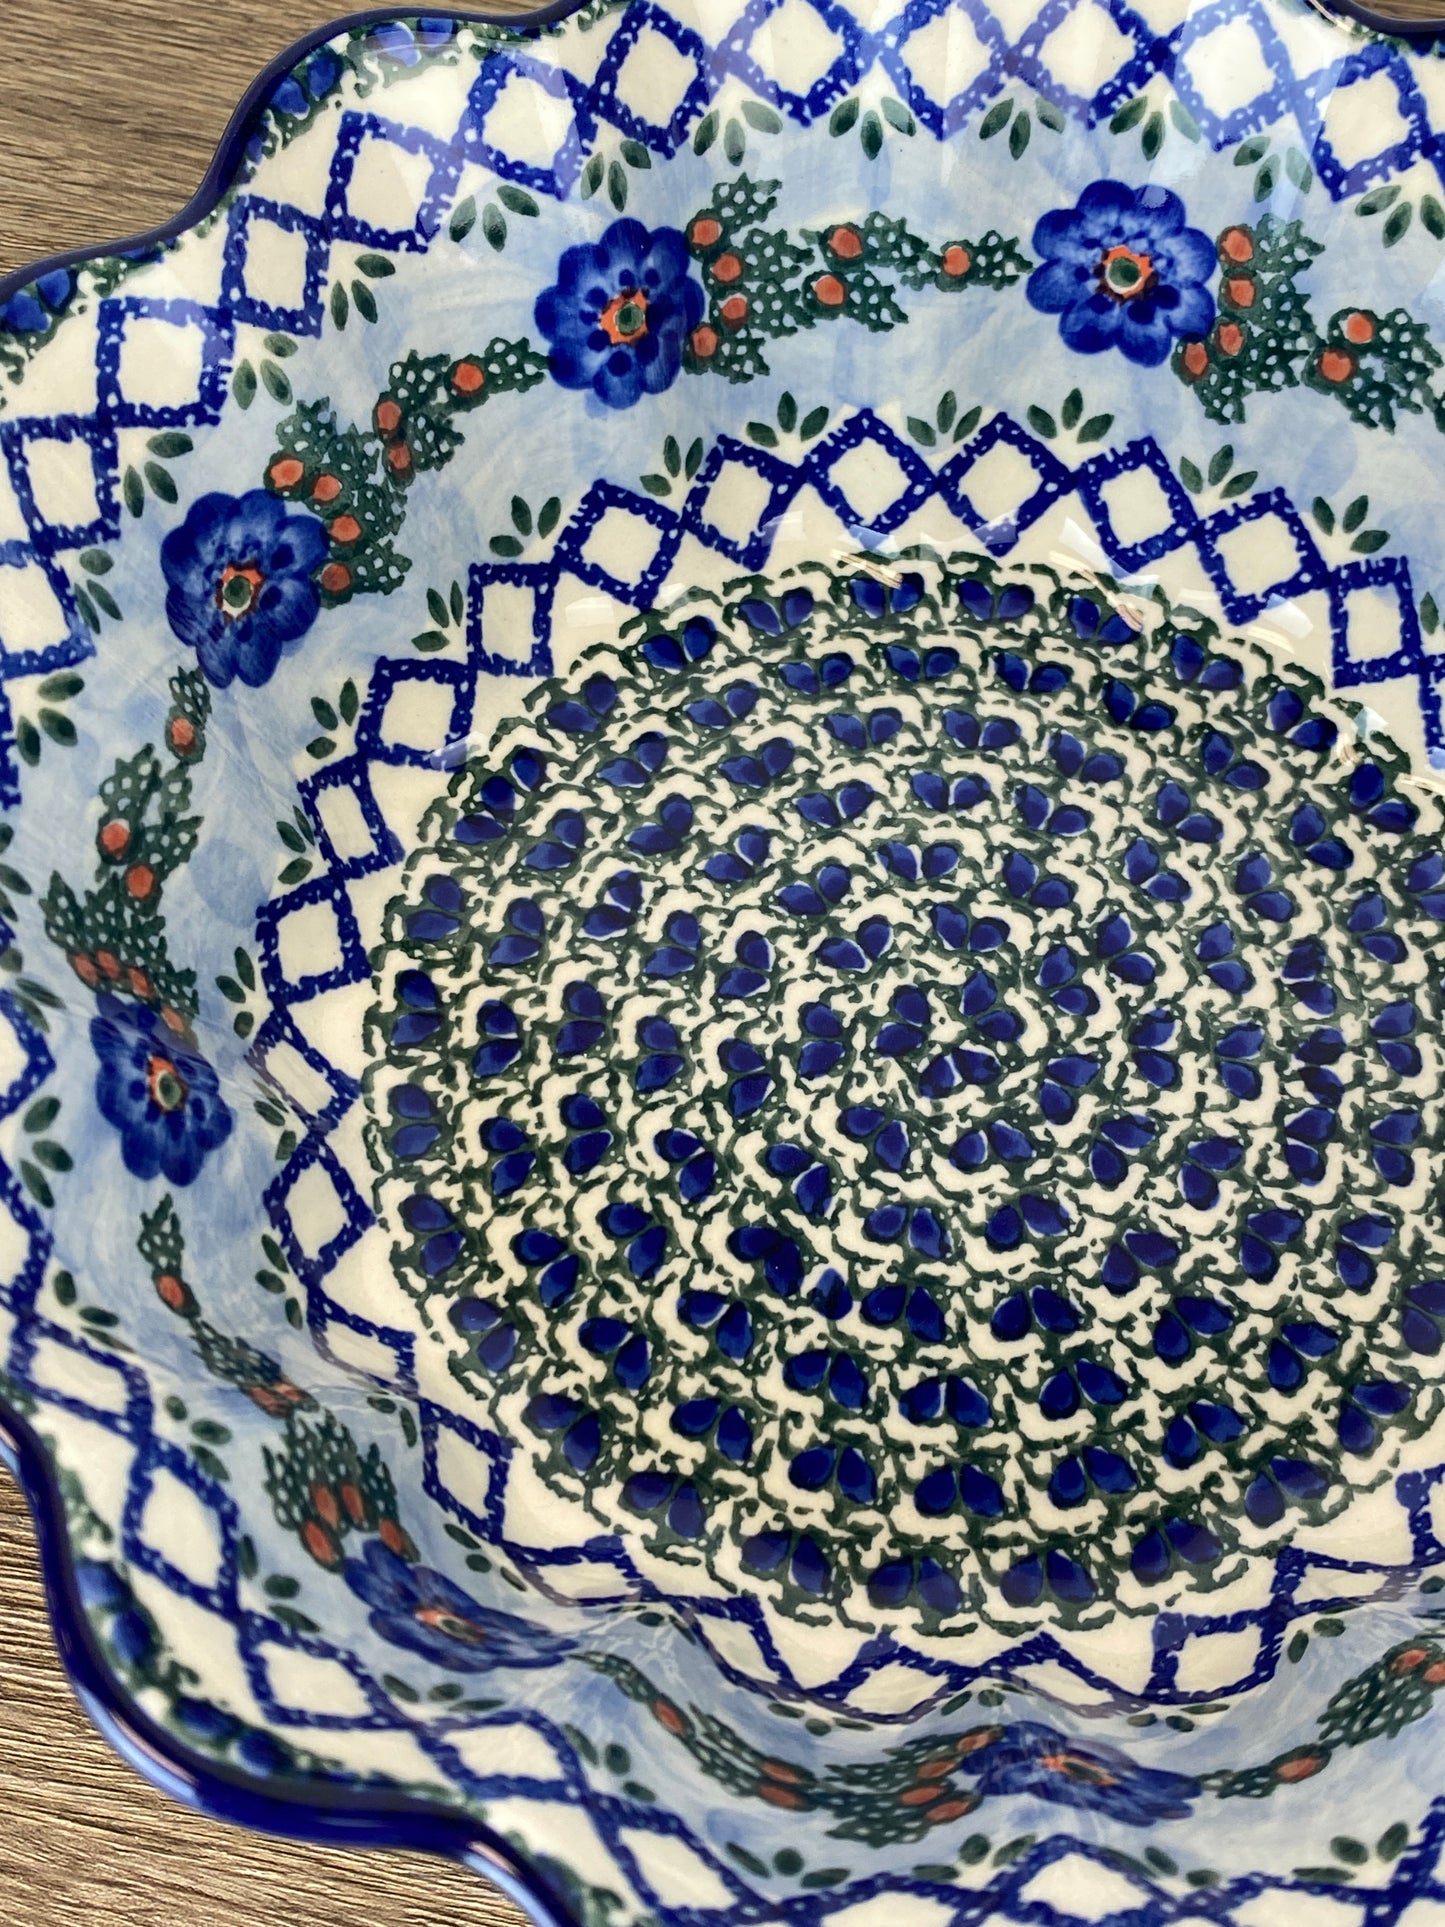 Large Scalloped Unikat Bowl - Shape 913 - Pattern U1573